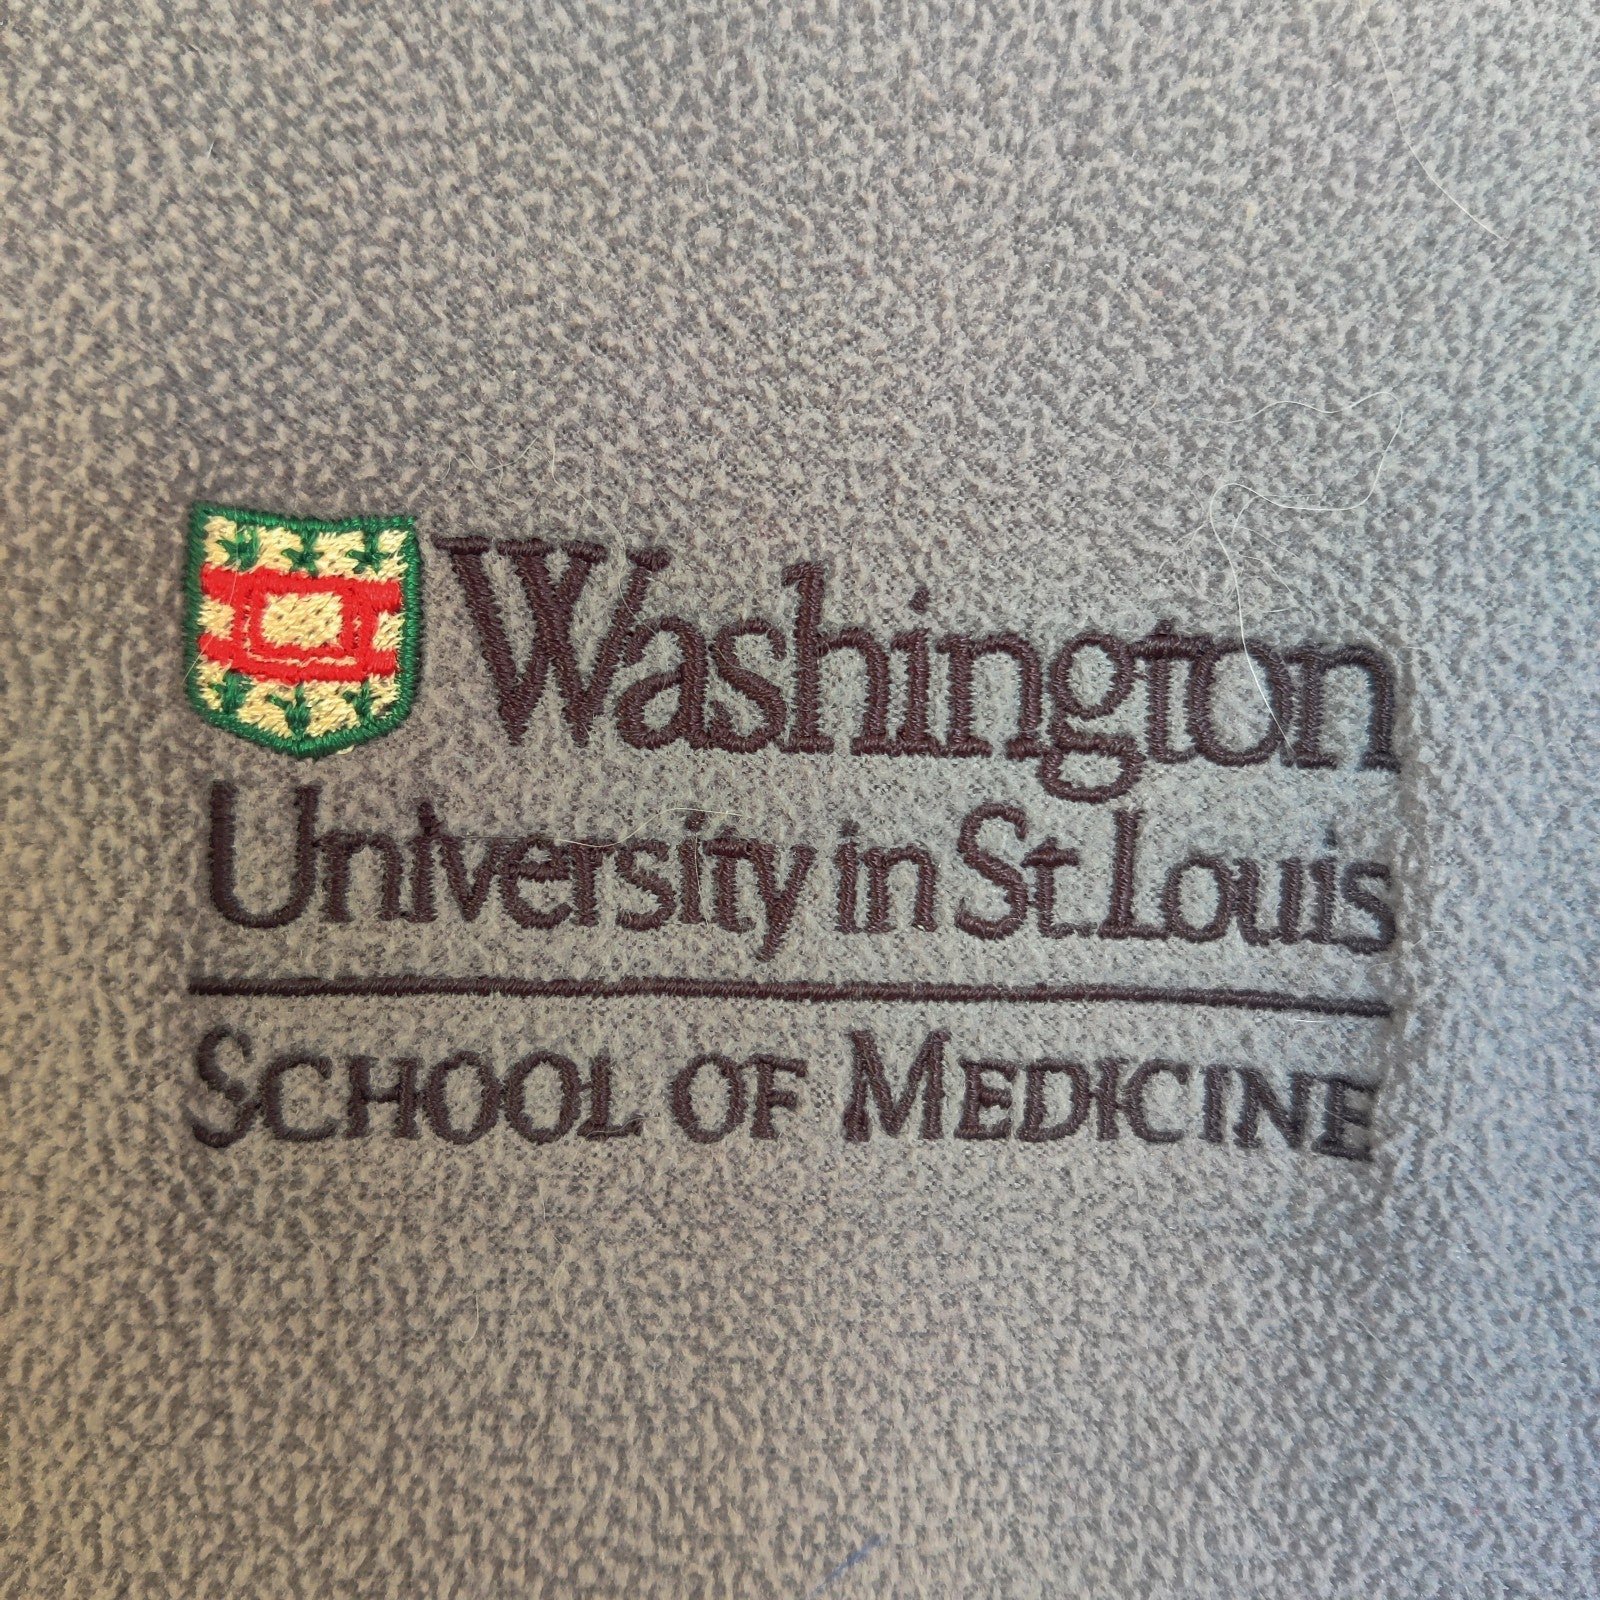 Nice Washington University School of Medicine 1/4 Zip Top - Gray jRDJxXtN2 Hot Sale